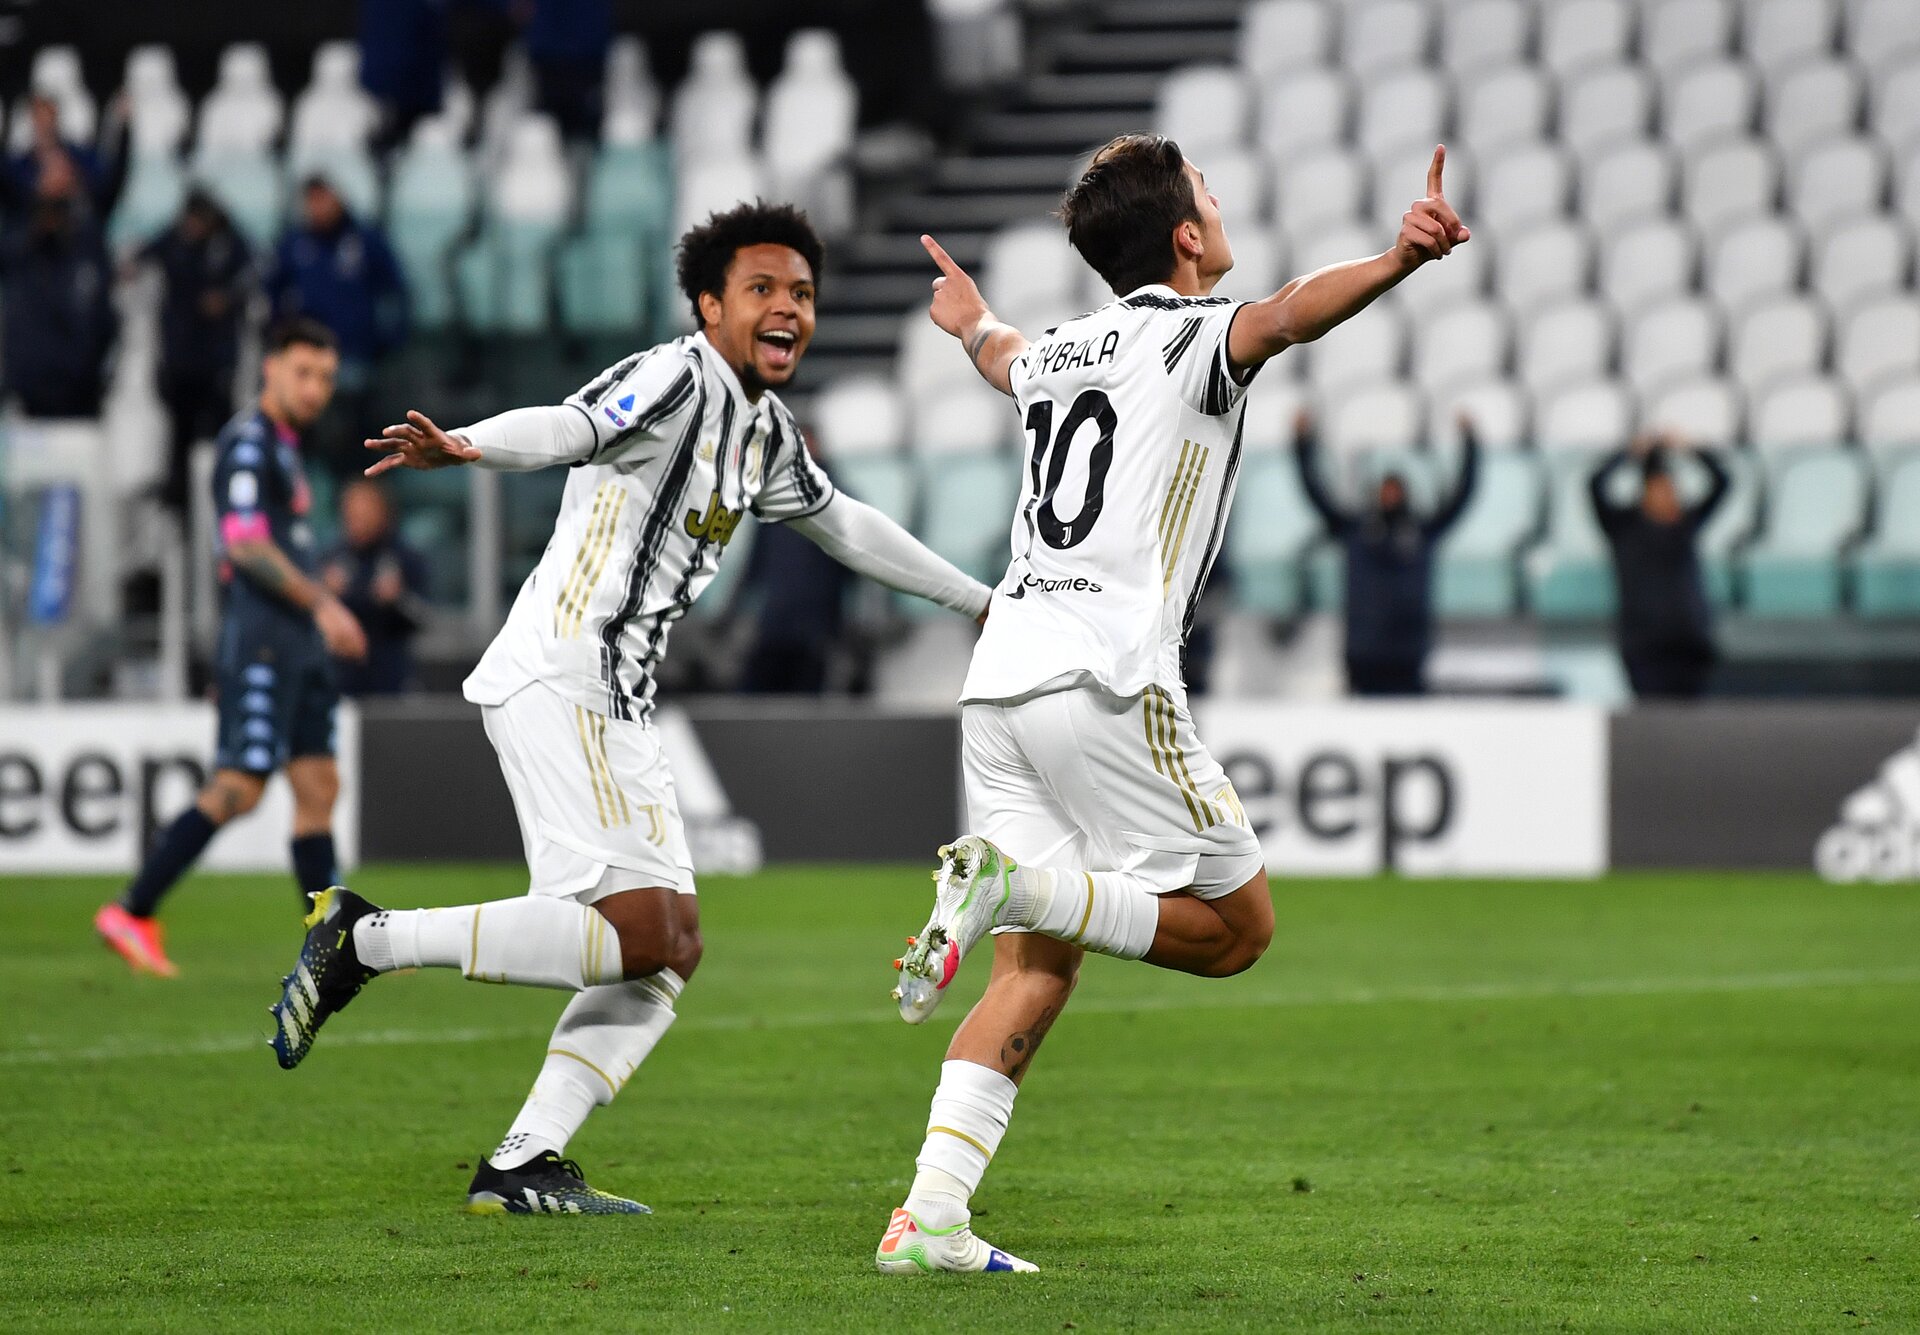 Serie A, recuperi: vincono Juve e Inter nel segno del 10